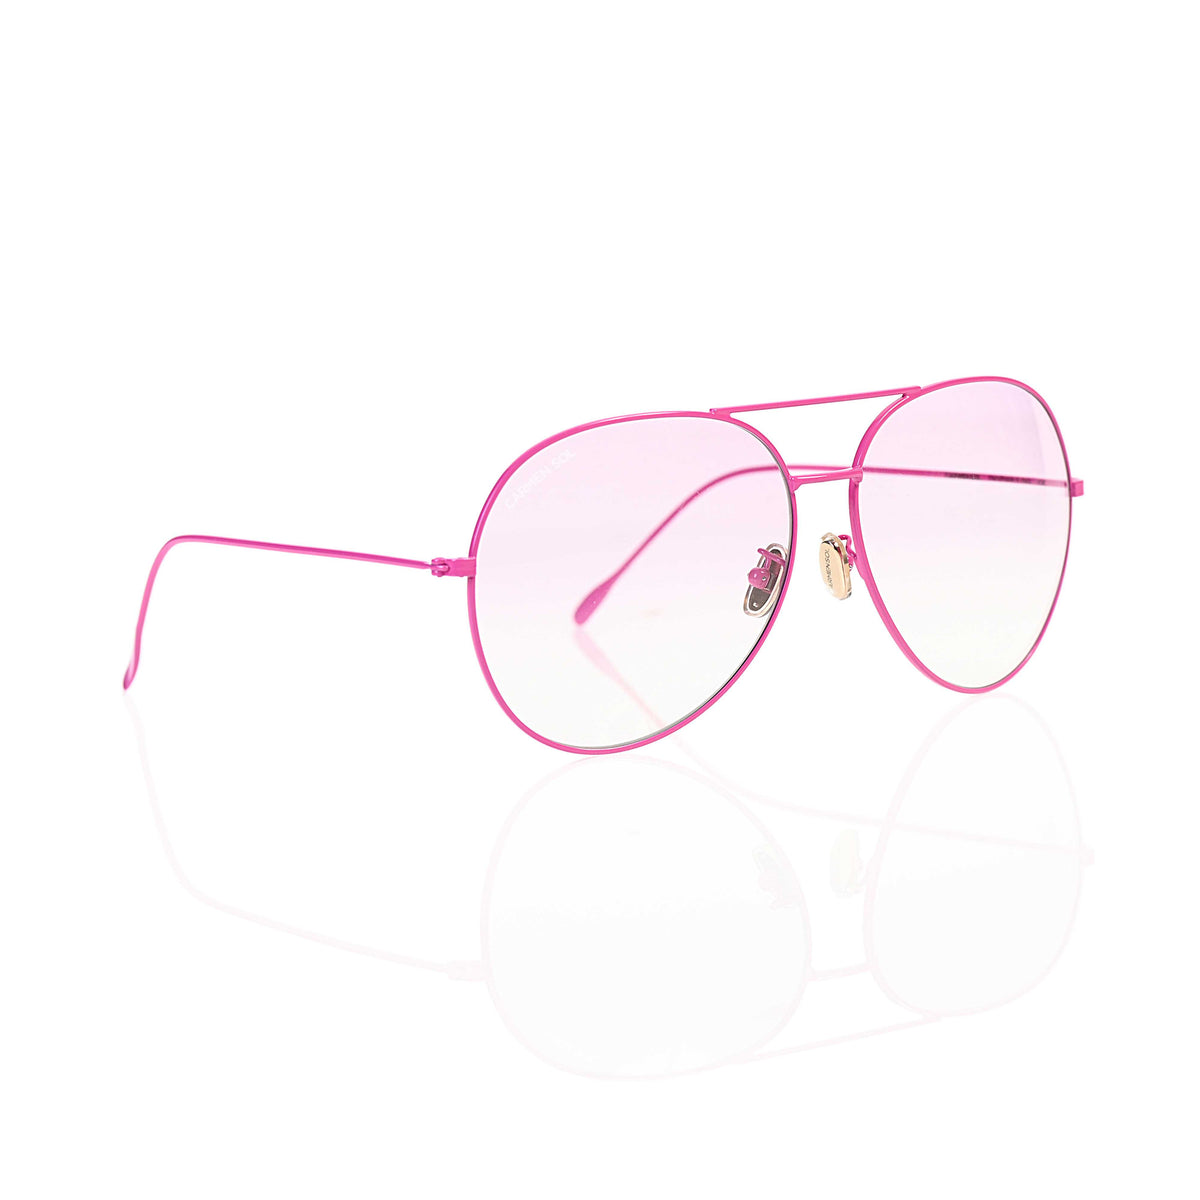 Fuchsia aviator, sunglasses for women from carmen sol best for beach lovers